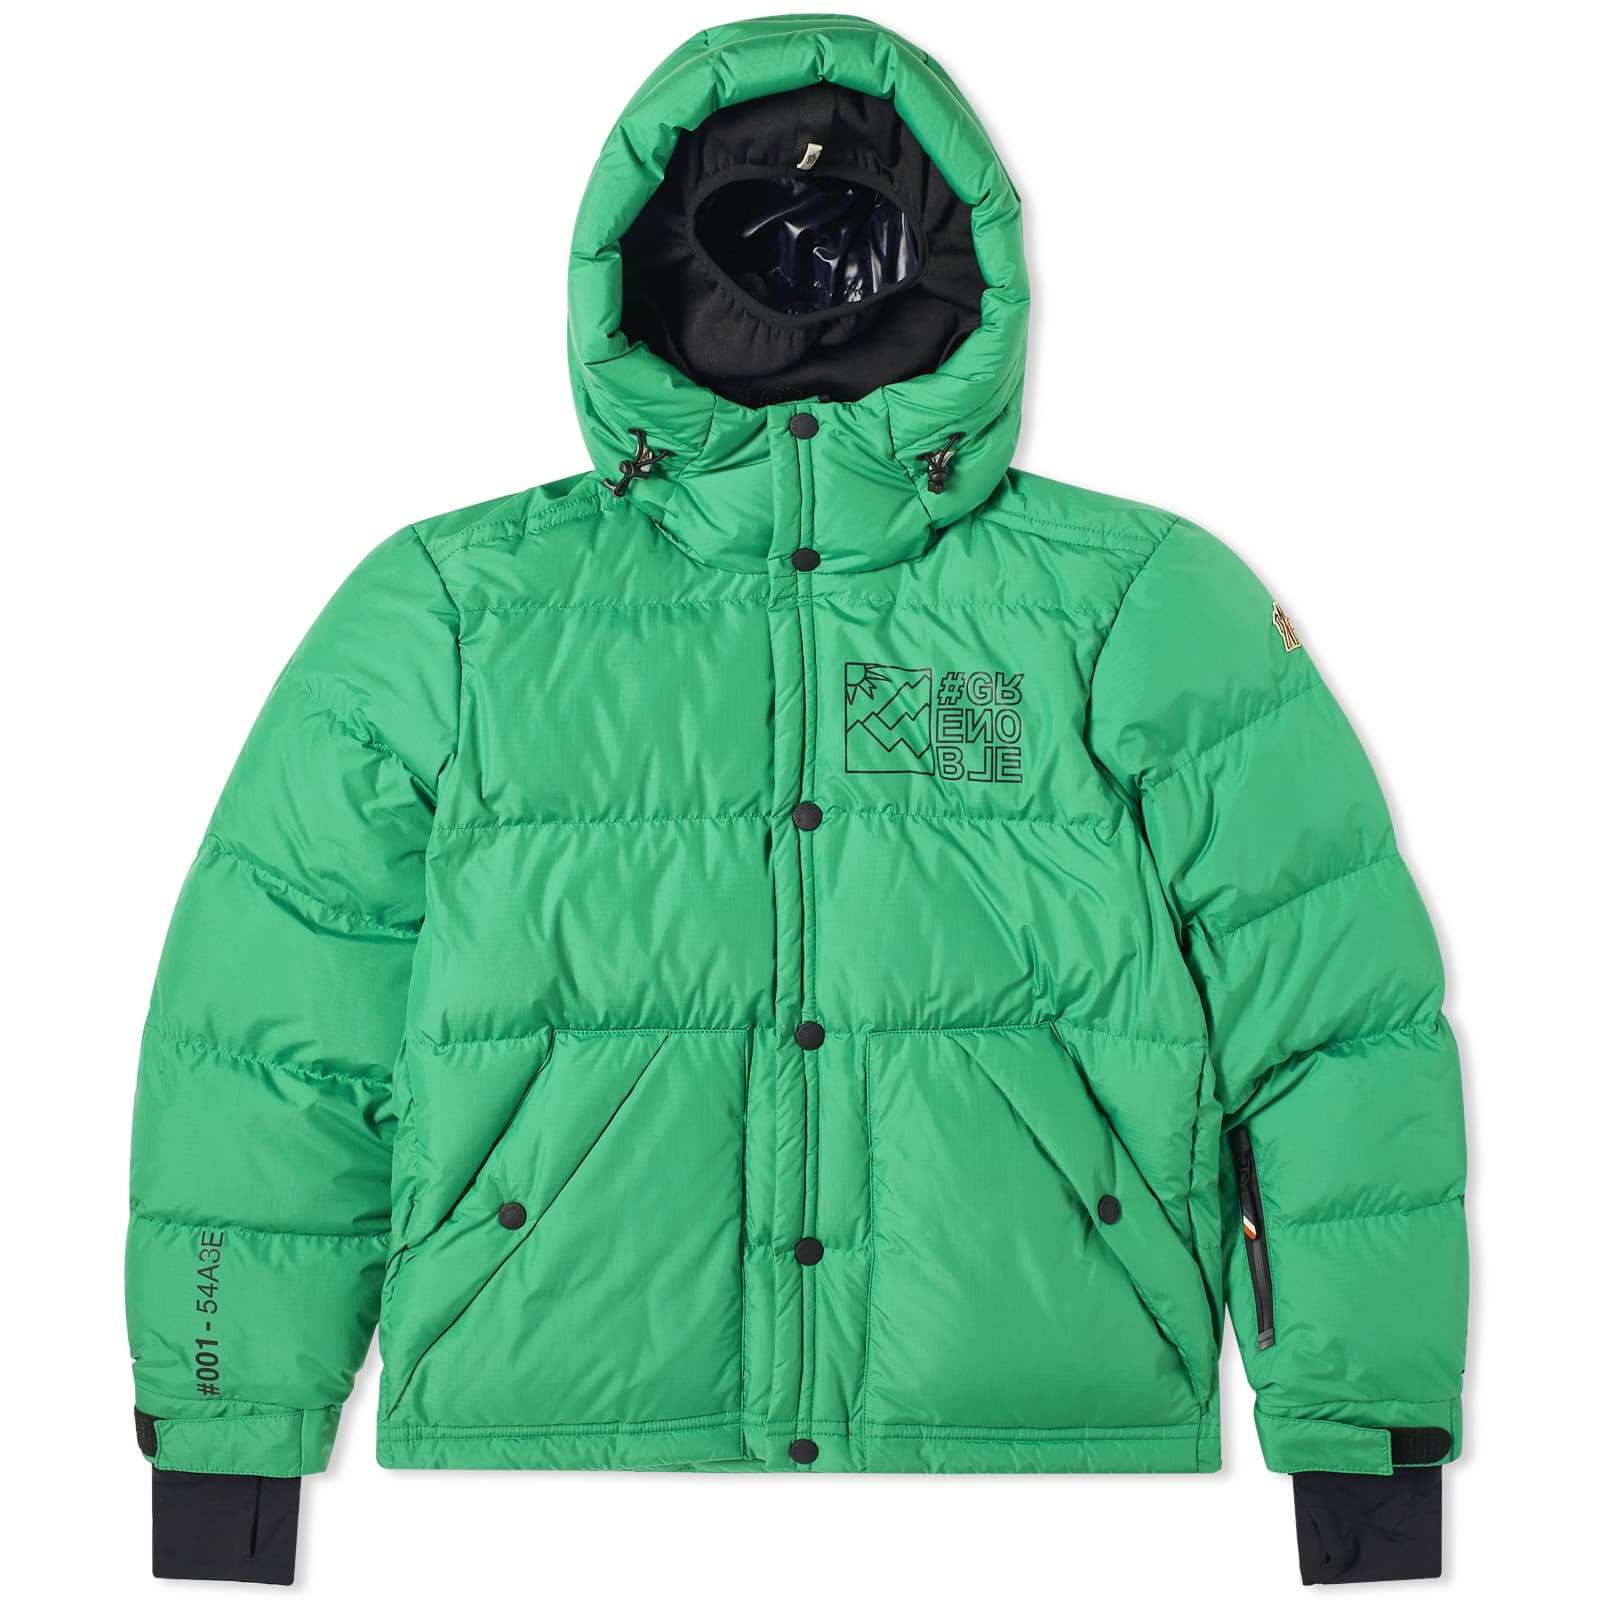 Куртка Moncler Grenoble Cristaux Ripstop, цвет Medium Green короткий пуховик цвета хаки raron moncler grenoble